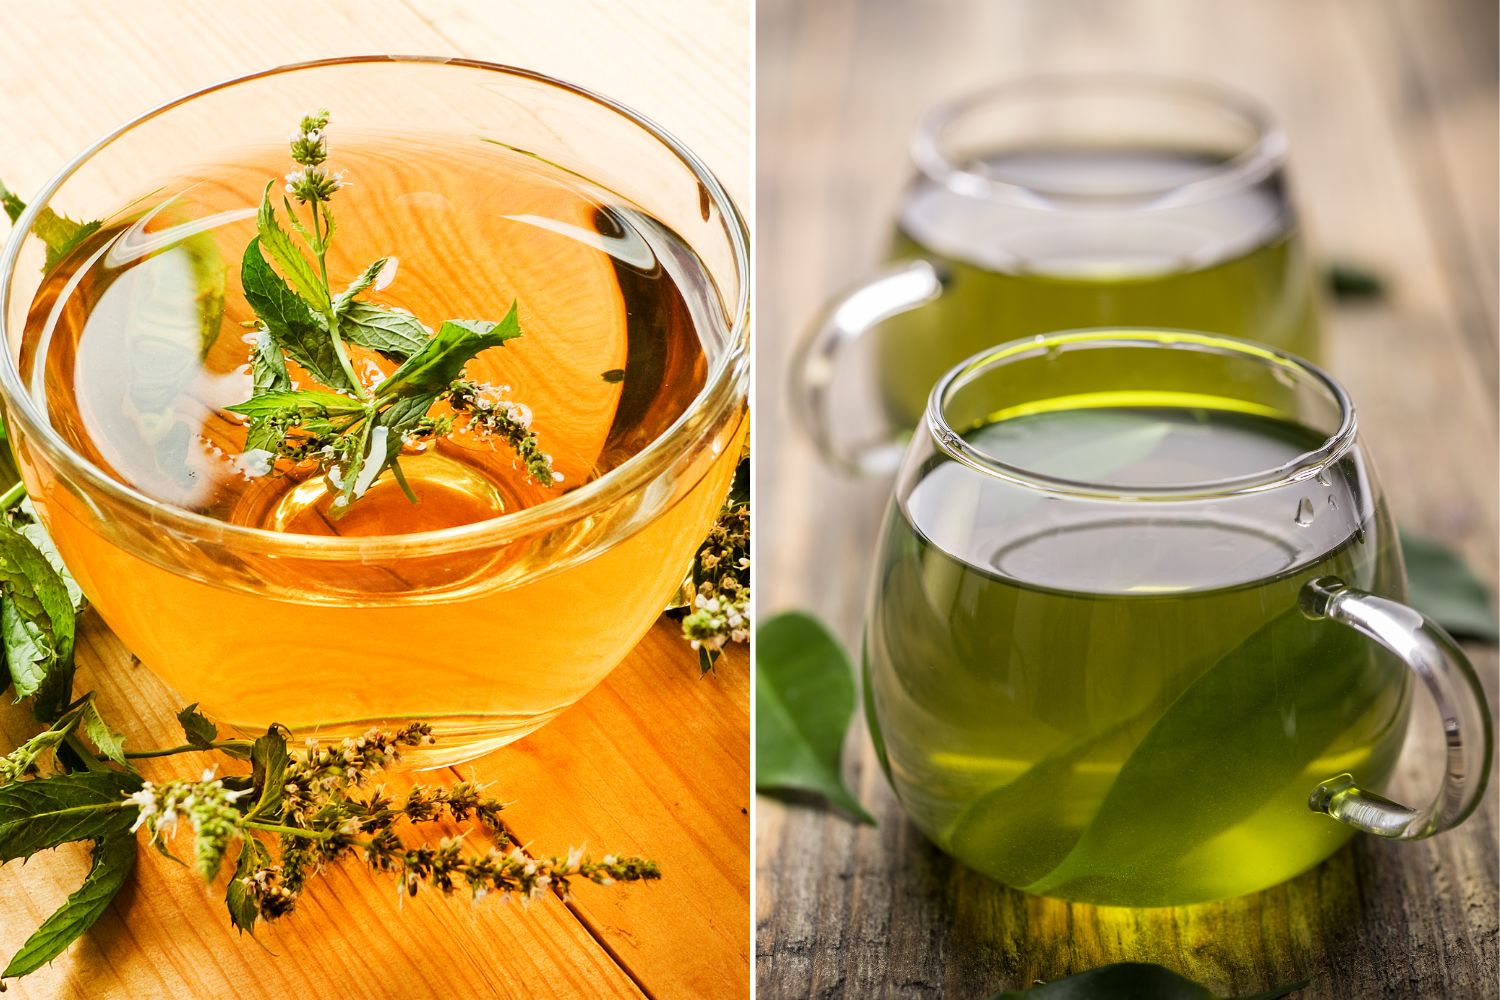 Green Tea vs Peppermint Tea